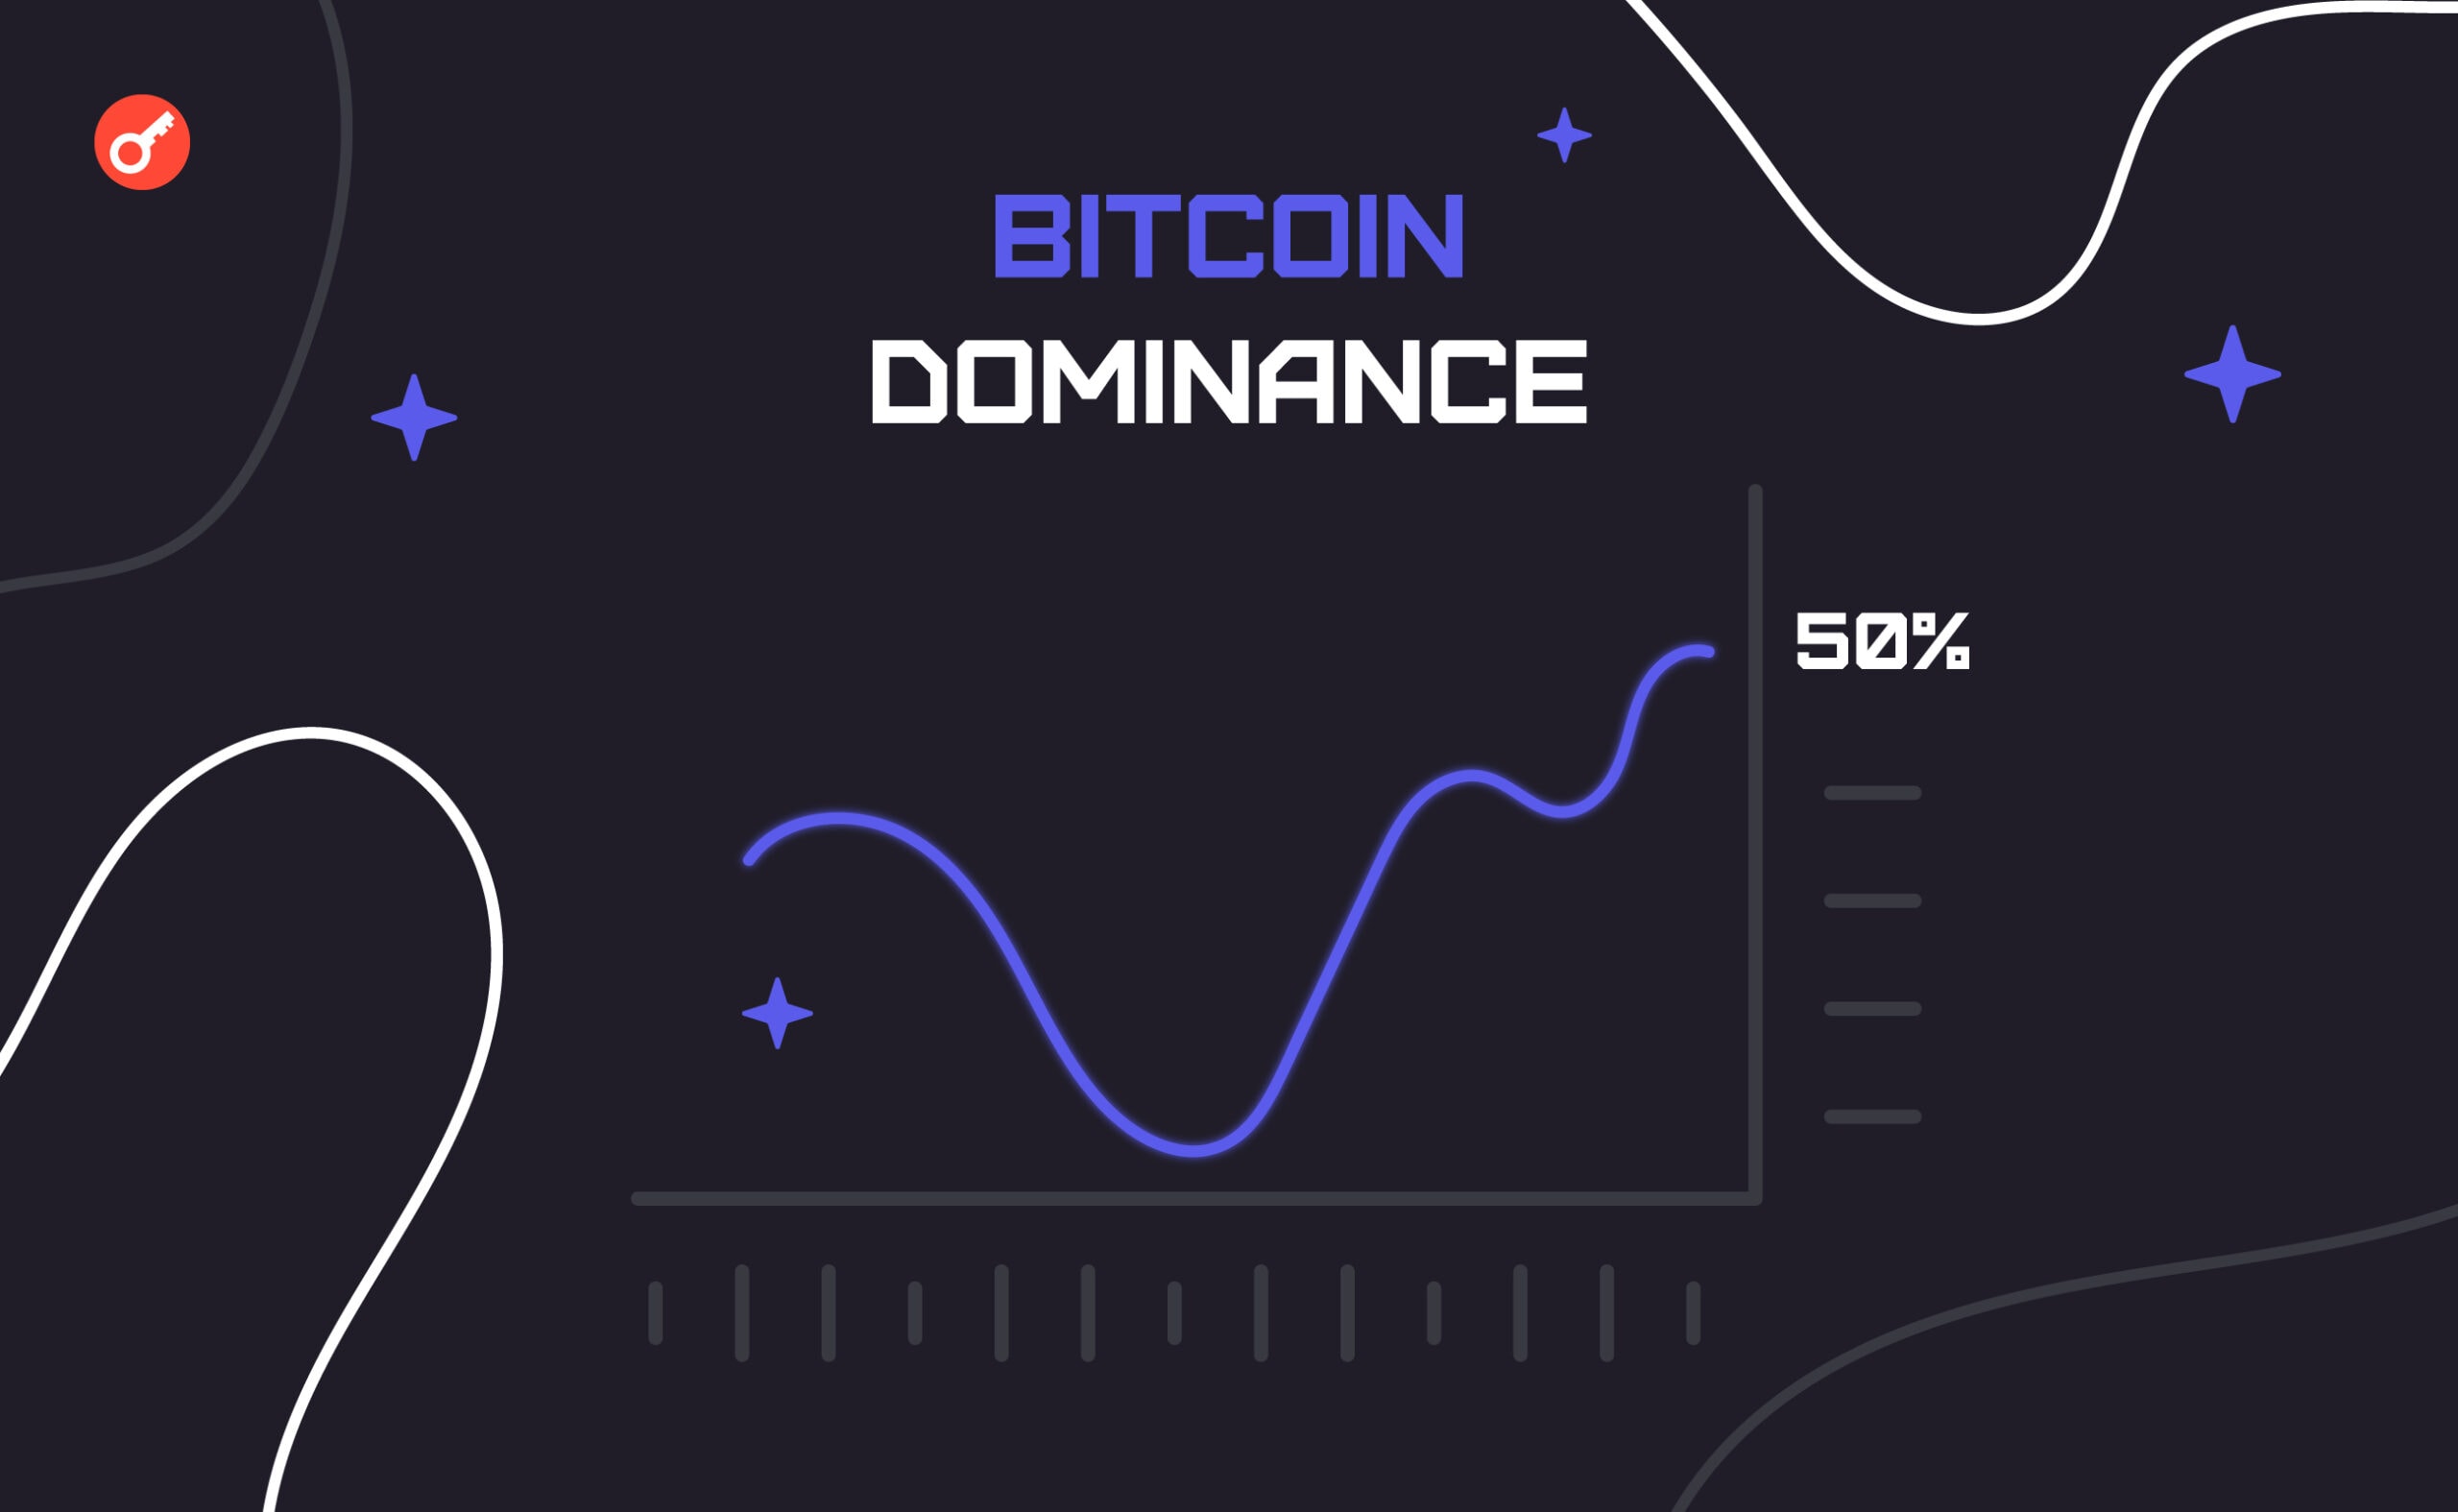 Домінація Bitcoin перевищила 50%. Головний колаж новини.